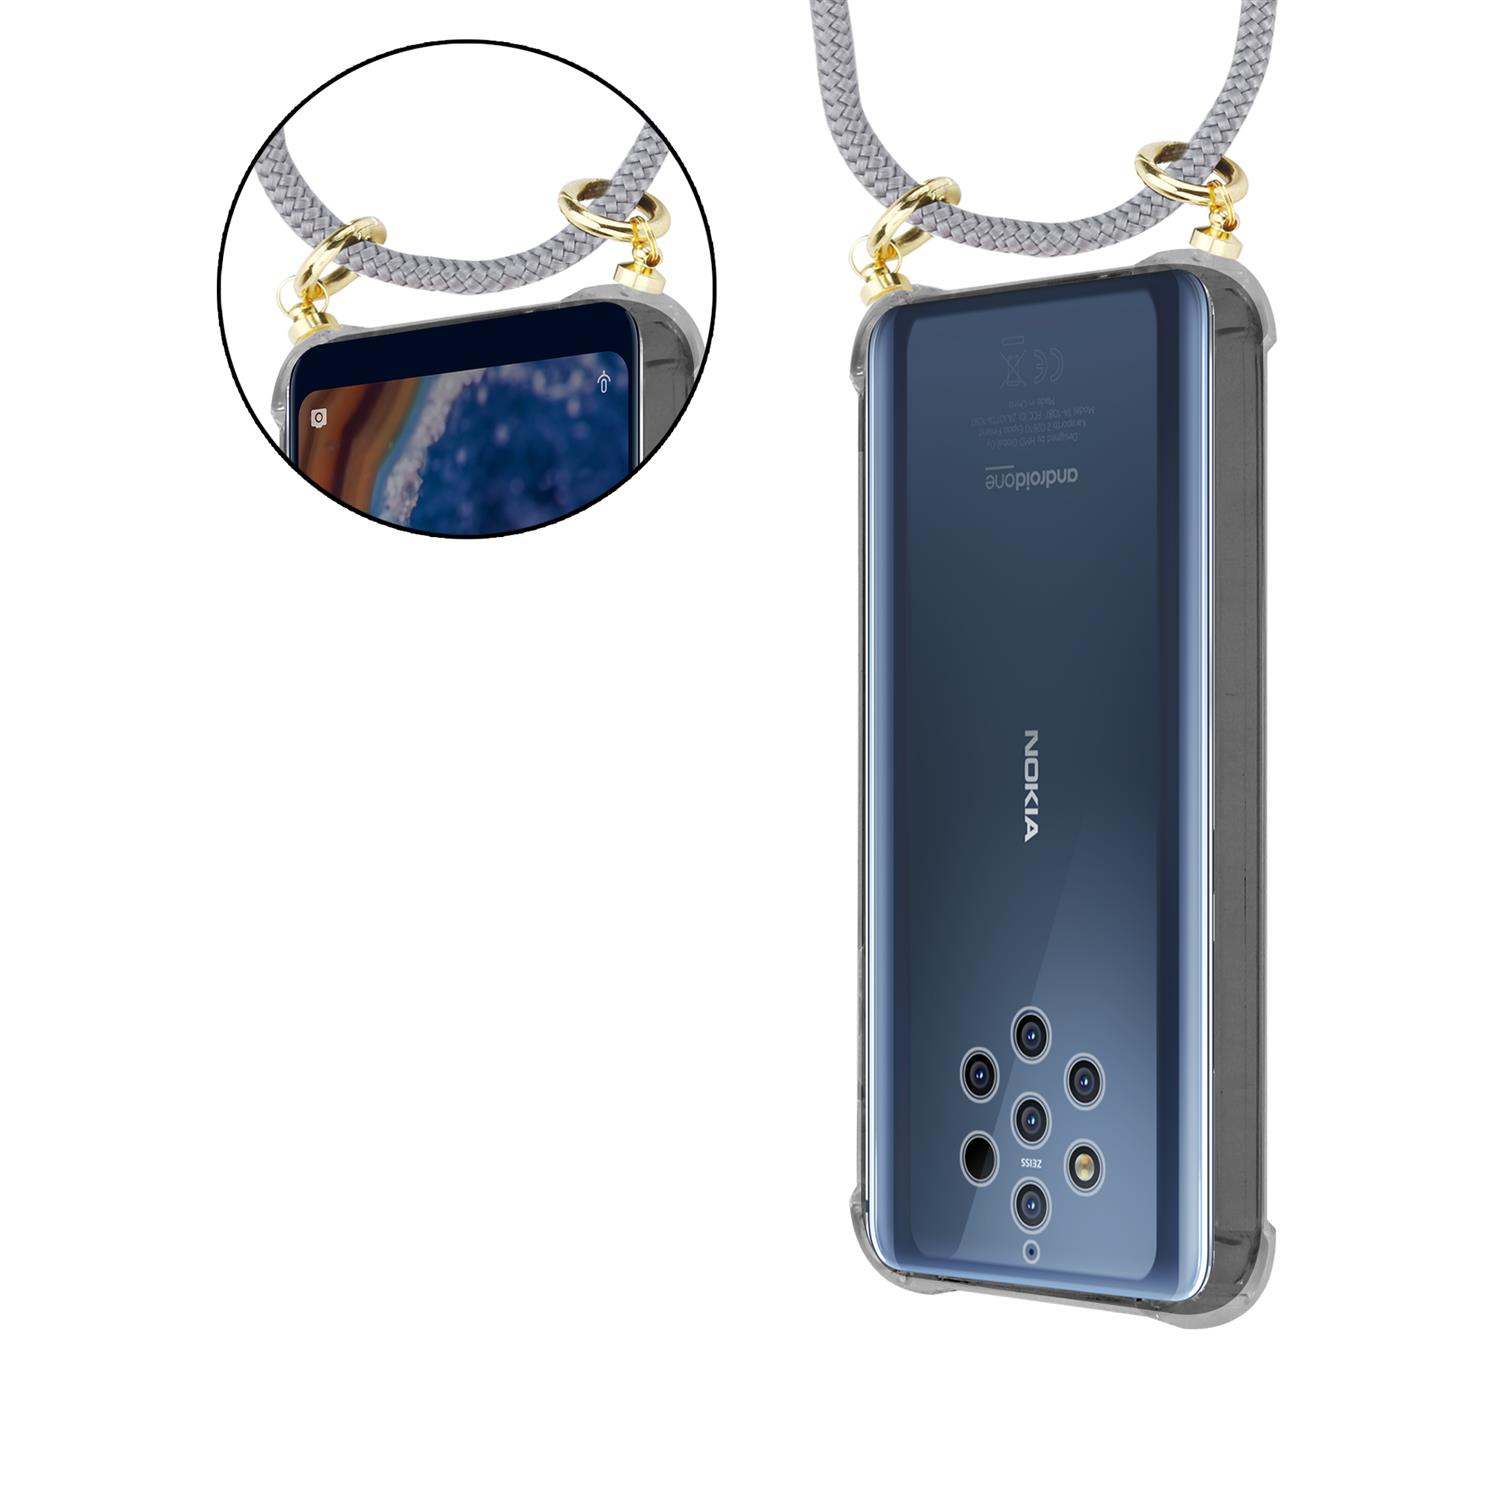 CADORABO Handy Kette mit Gold Band Ringen, und Kordel abnehmbarer 2017, Backcover, Hülle, GRAU SILBER Nokia, 2